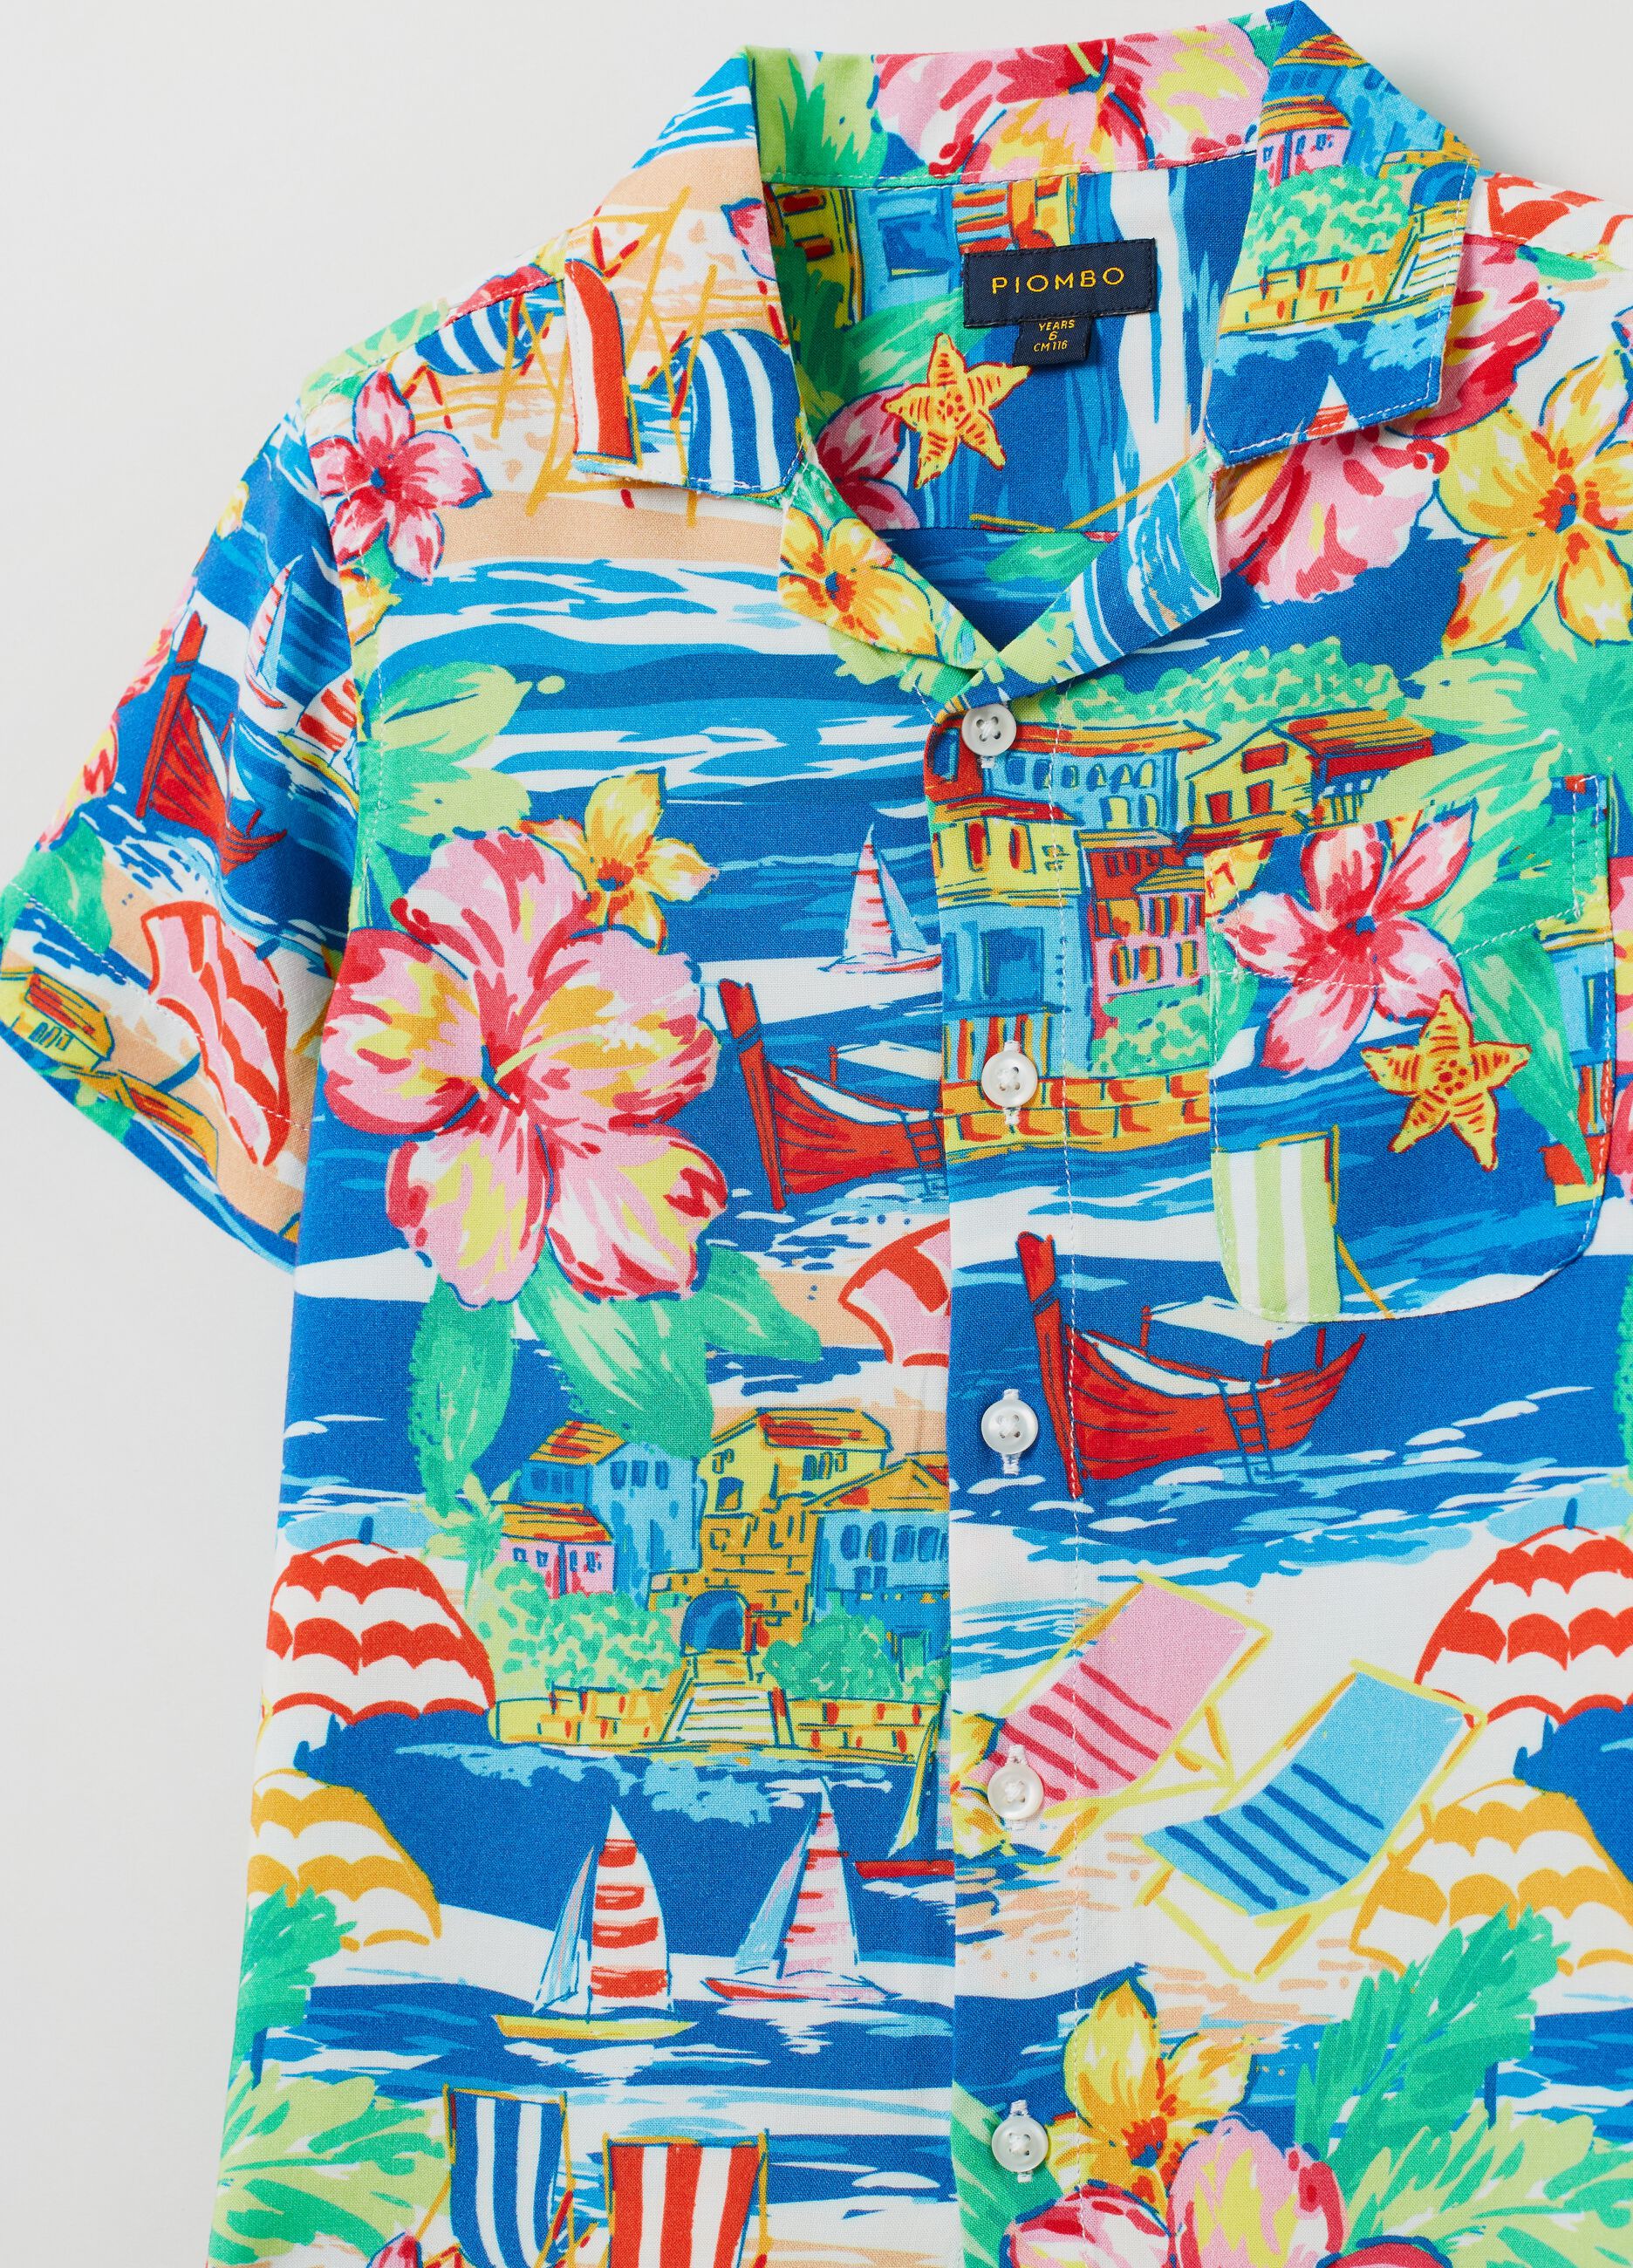 Camisa con estampado hawaiano